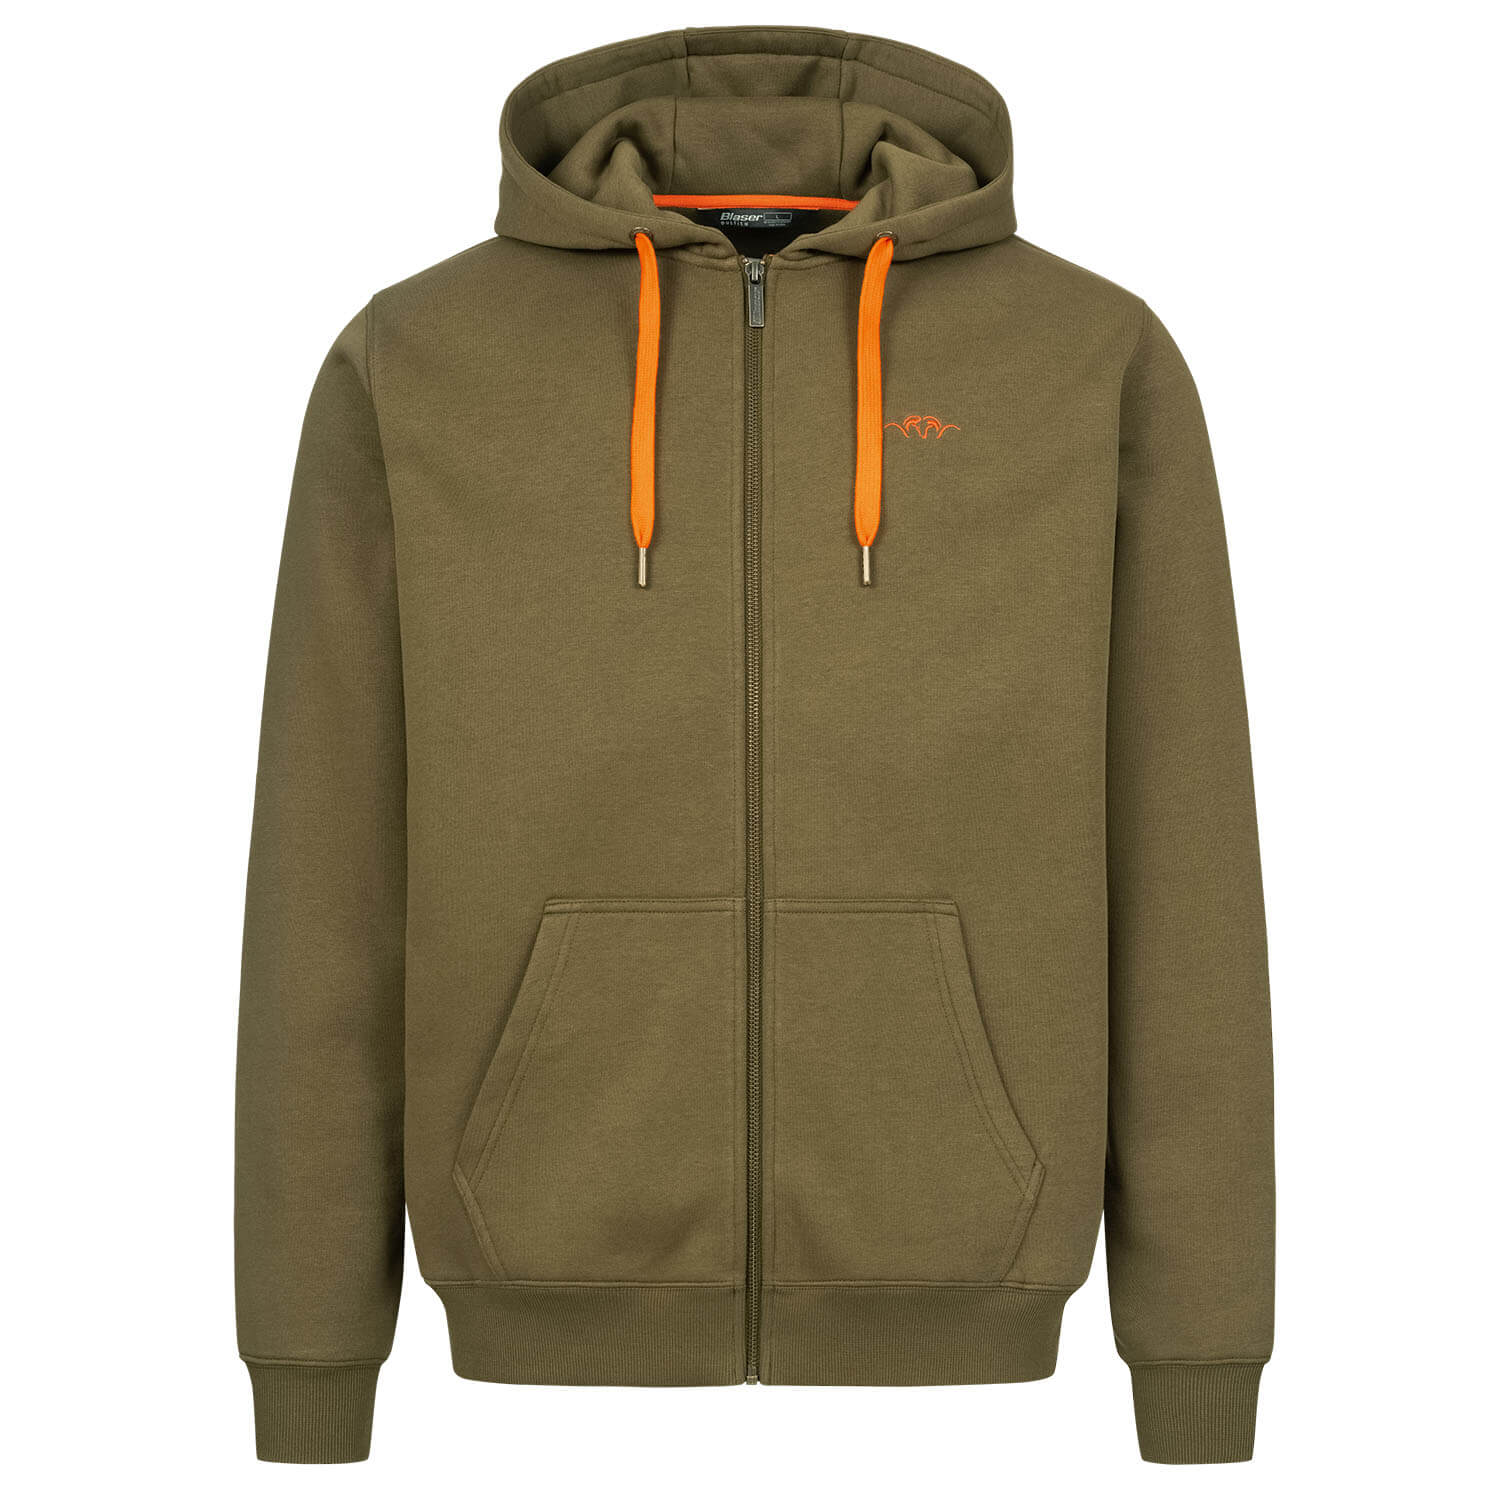 Blaser hoody jacket 23 (oliv) - Sweaters & Jerseys